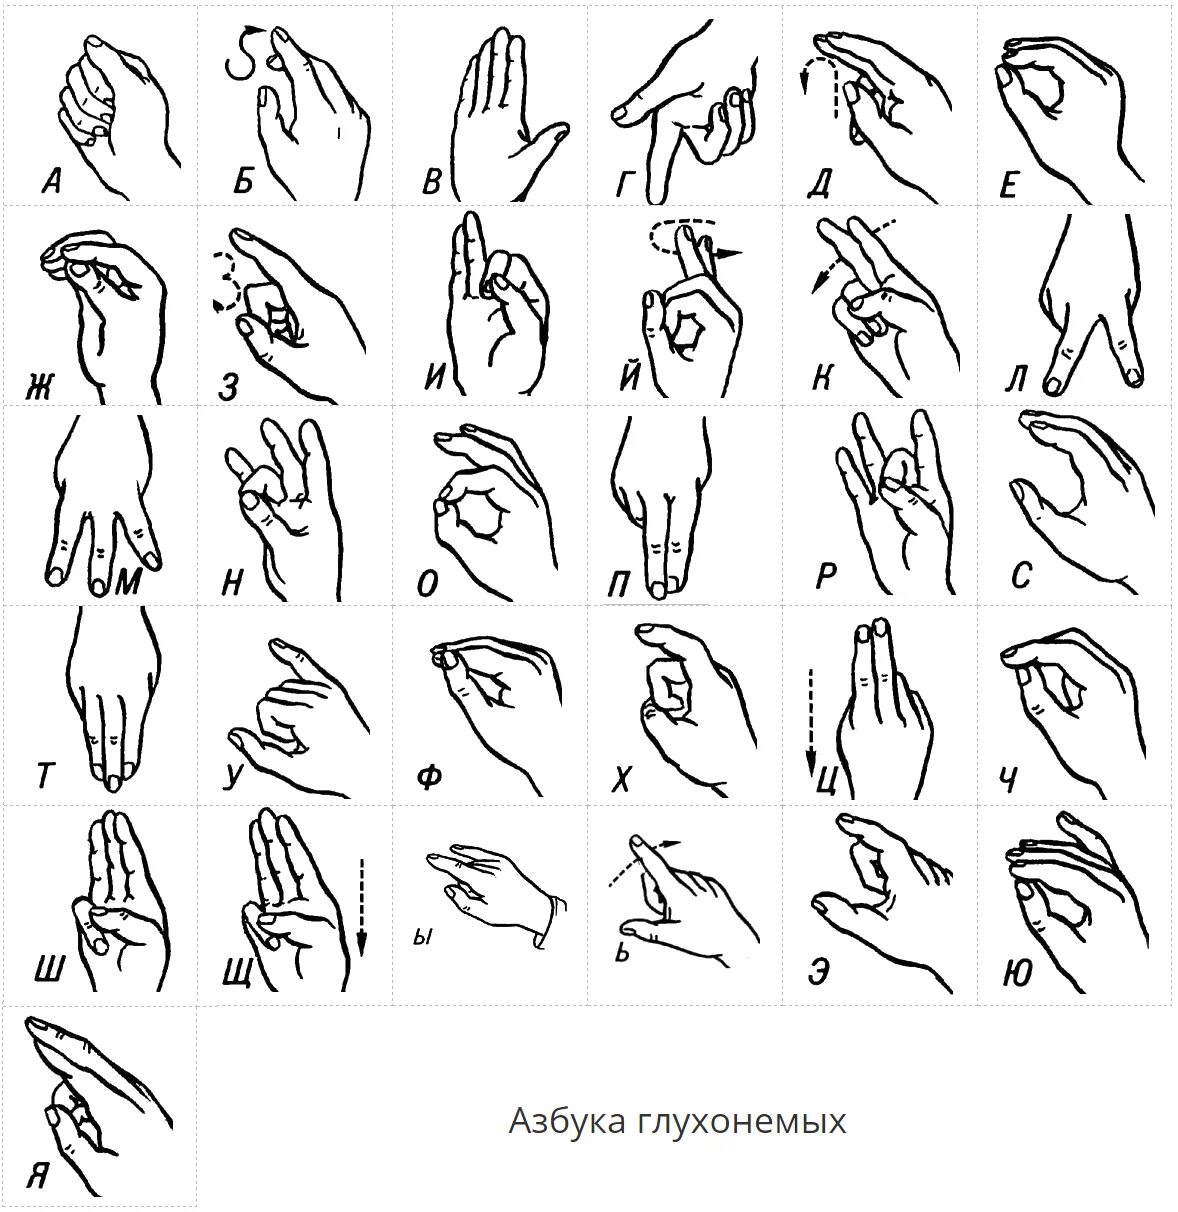 Язык жестов глухонемых алфавит. Алфавит жестов для глухонемых. Дактиль Азбука жестов. Азбука для глухонемых дактильная. Русские жесты глухонемых